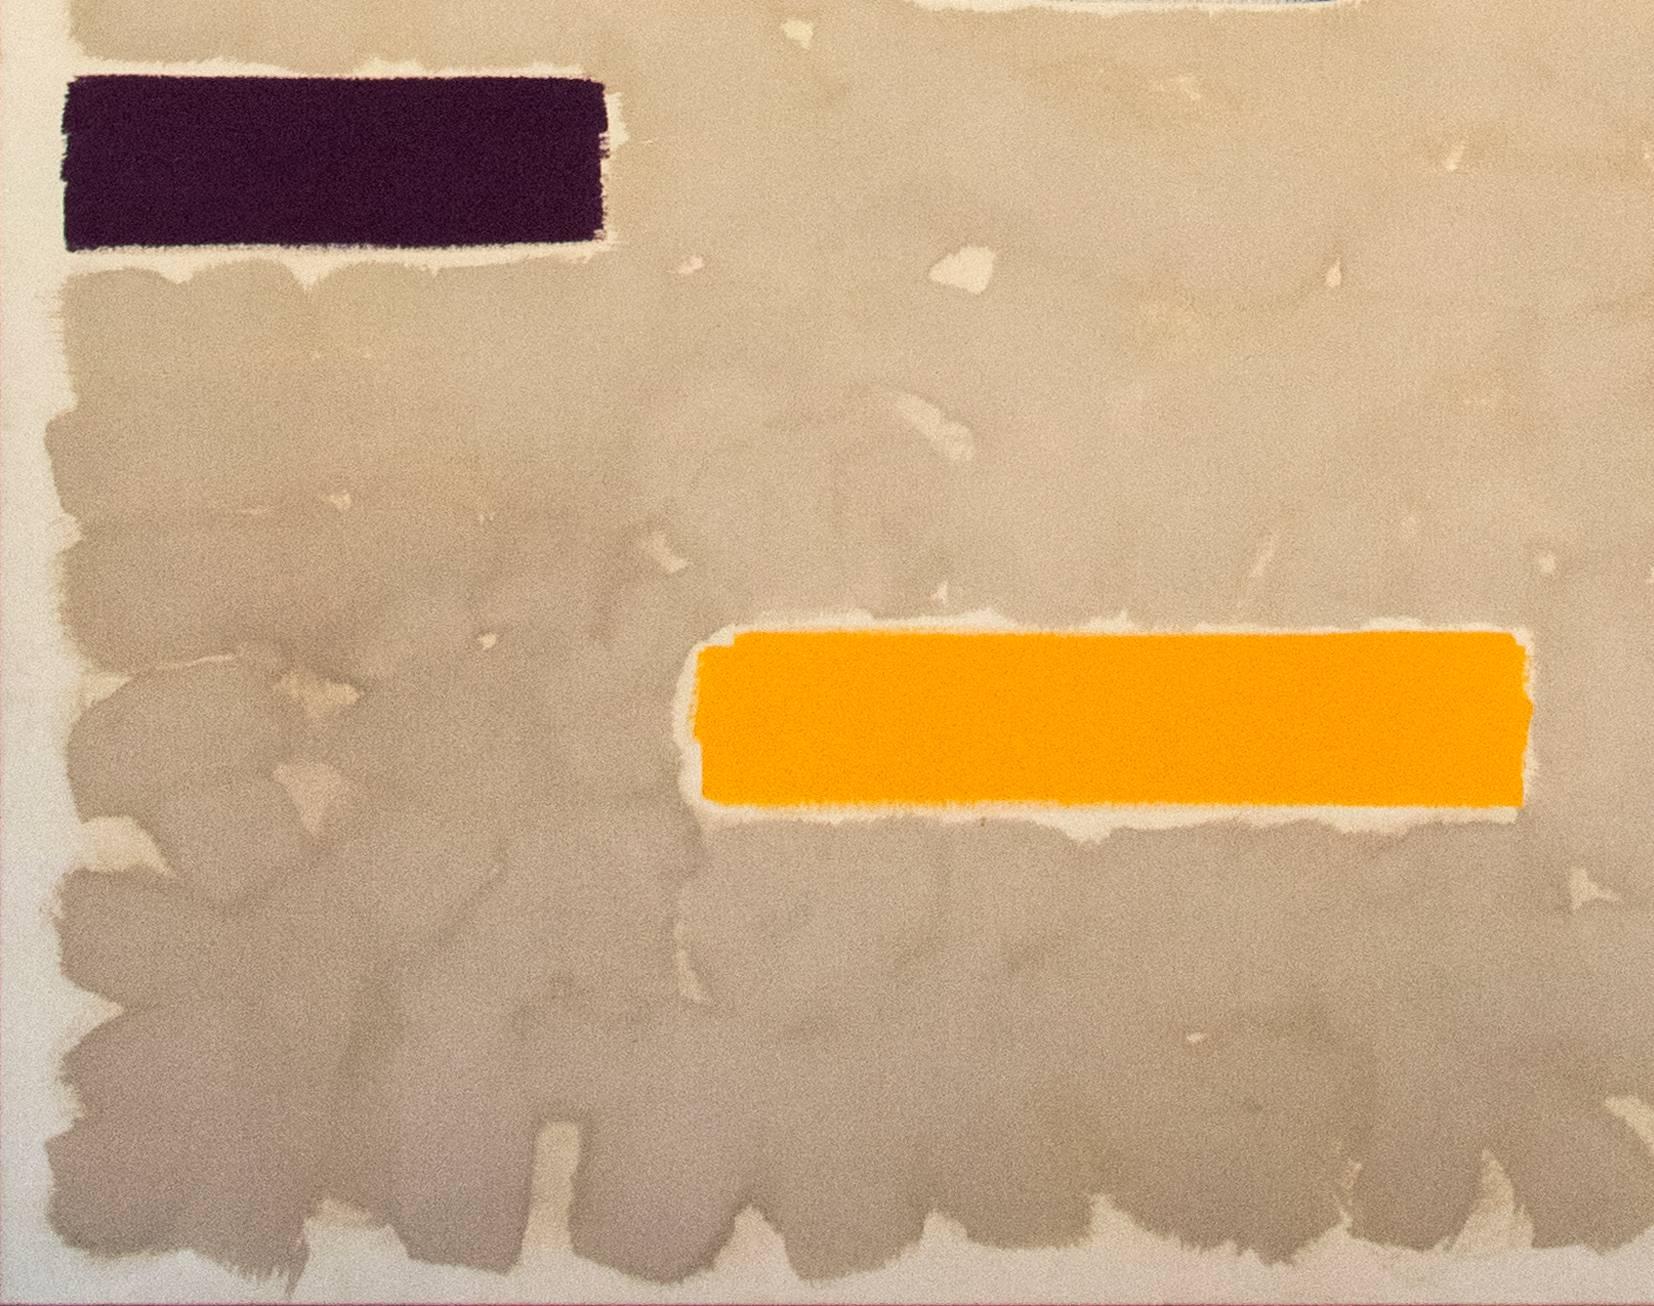 Horizontale Balken in Blau, Kastanienbraun, Kirschrot, Rosa, Zitronengelb, verbranntem Orange und Grün kommunizieren auf einem durchtränkten sandfarbenen Grund in den beiden Tafeln, die dieses 9 Fuß große quadratische Acryl-Diptychon auf Leinwand